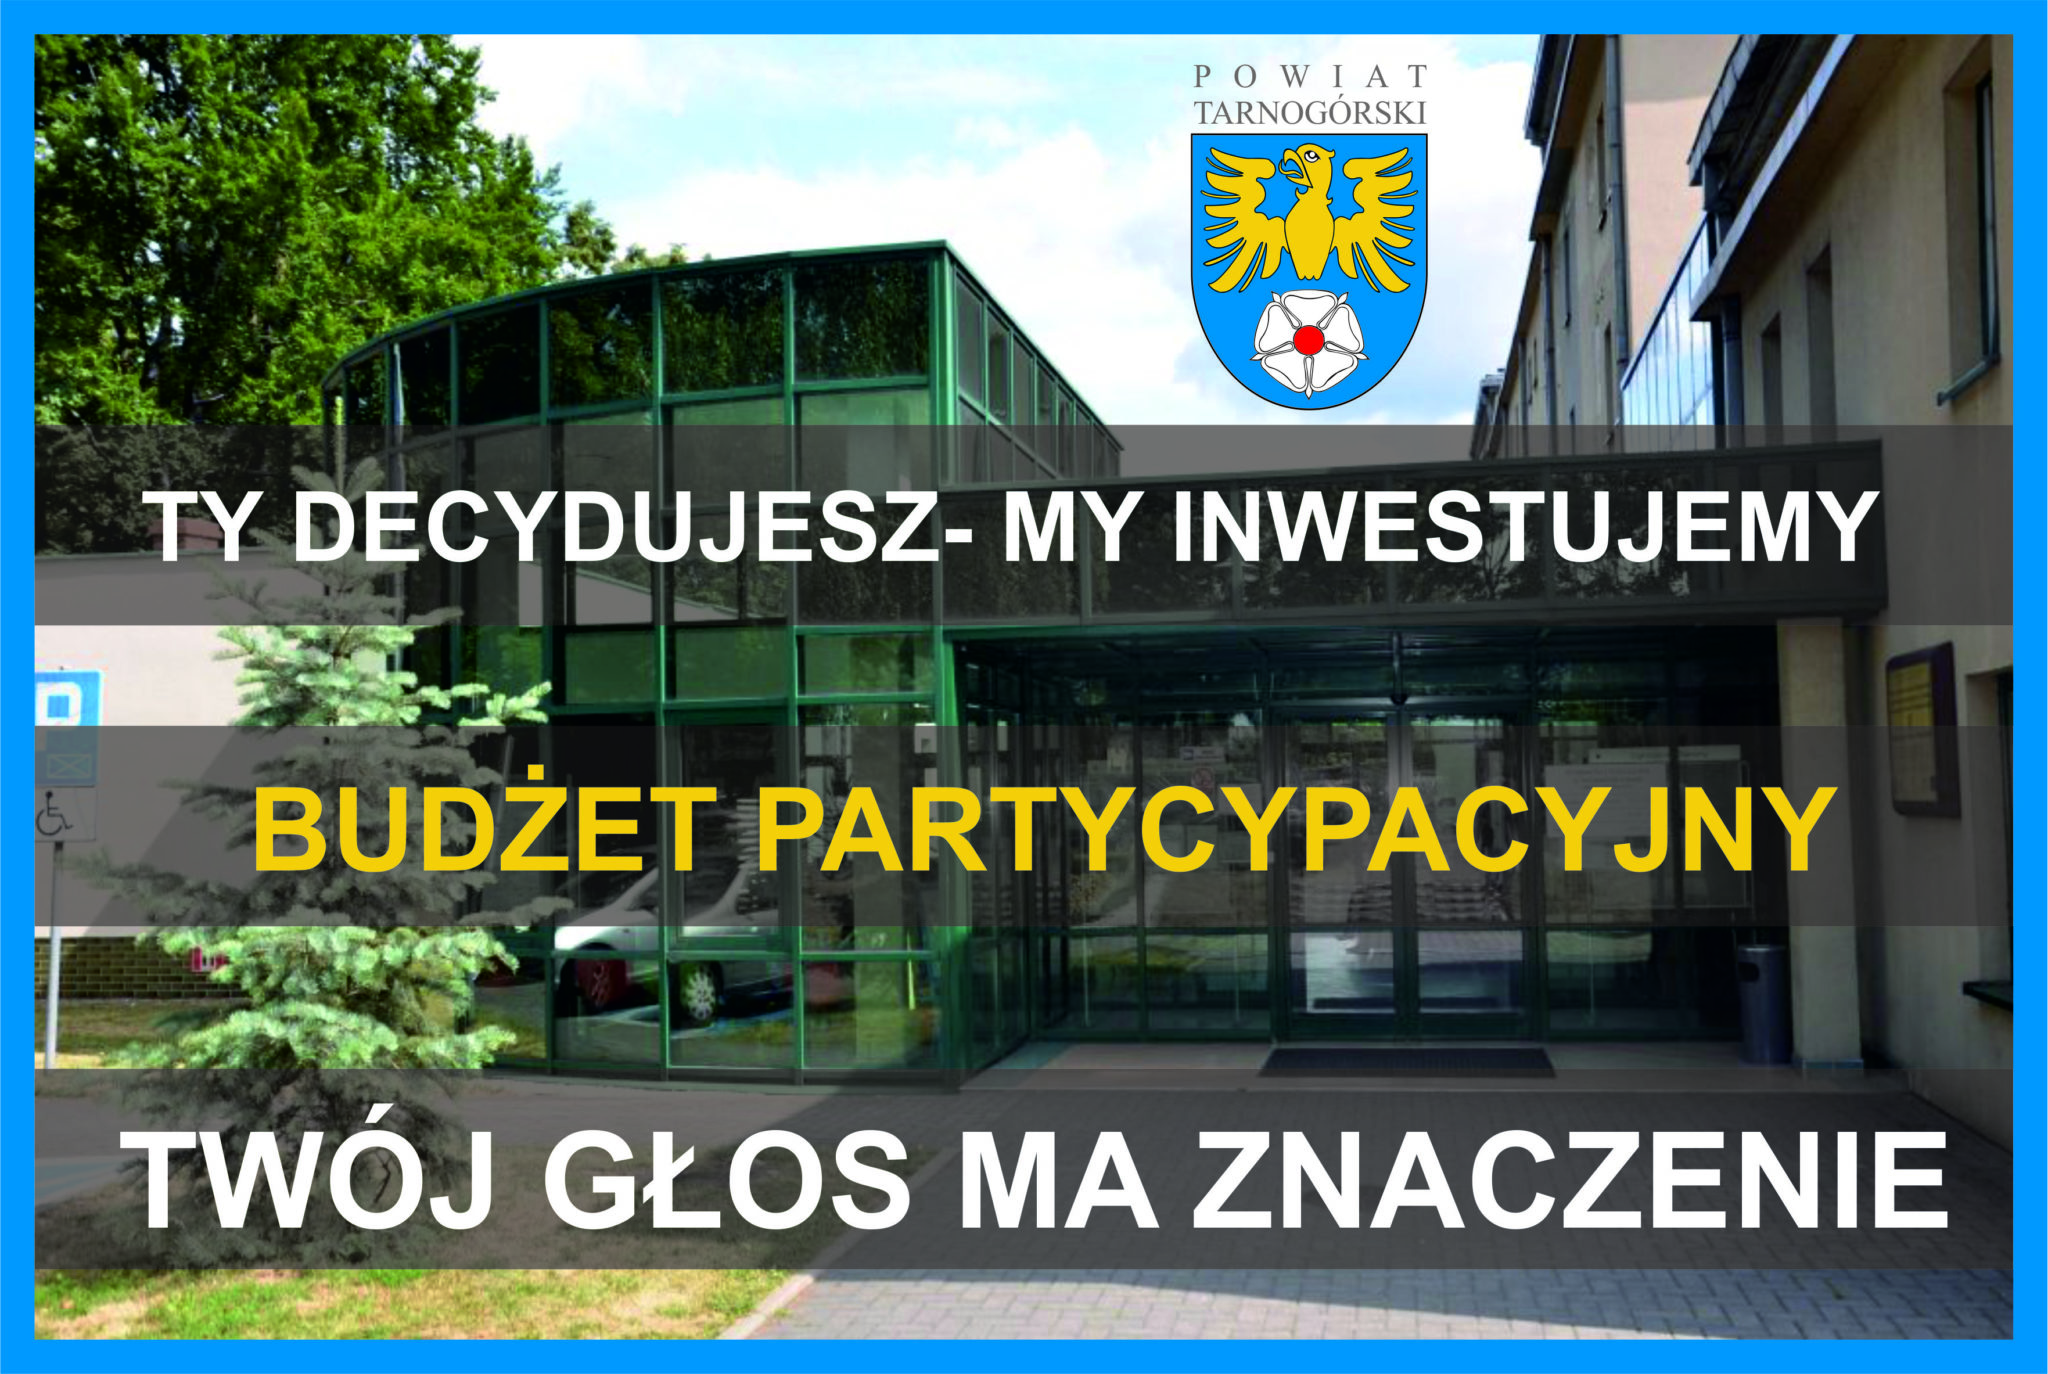 Budżet Partycypacyjny Powiatu Tarnogórskiego